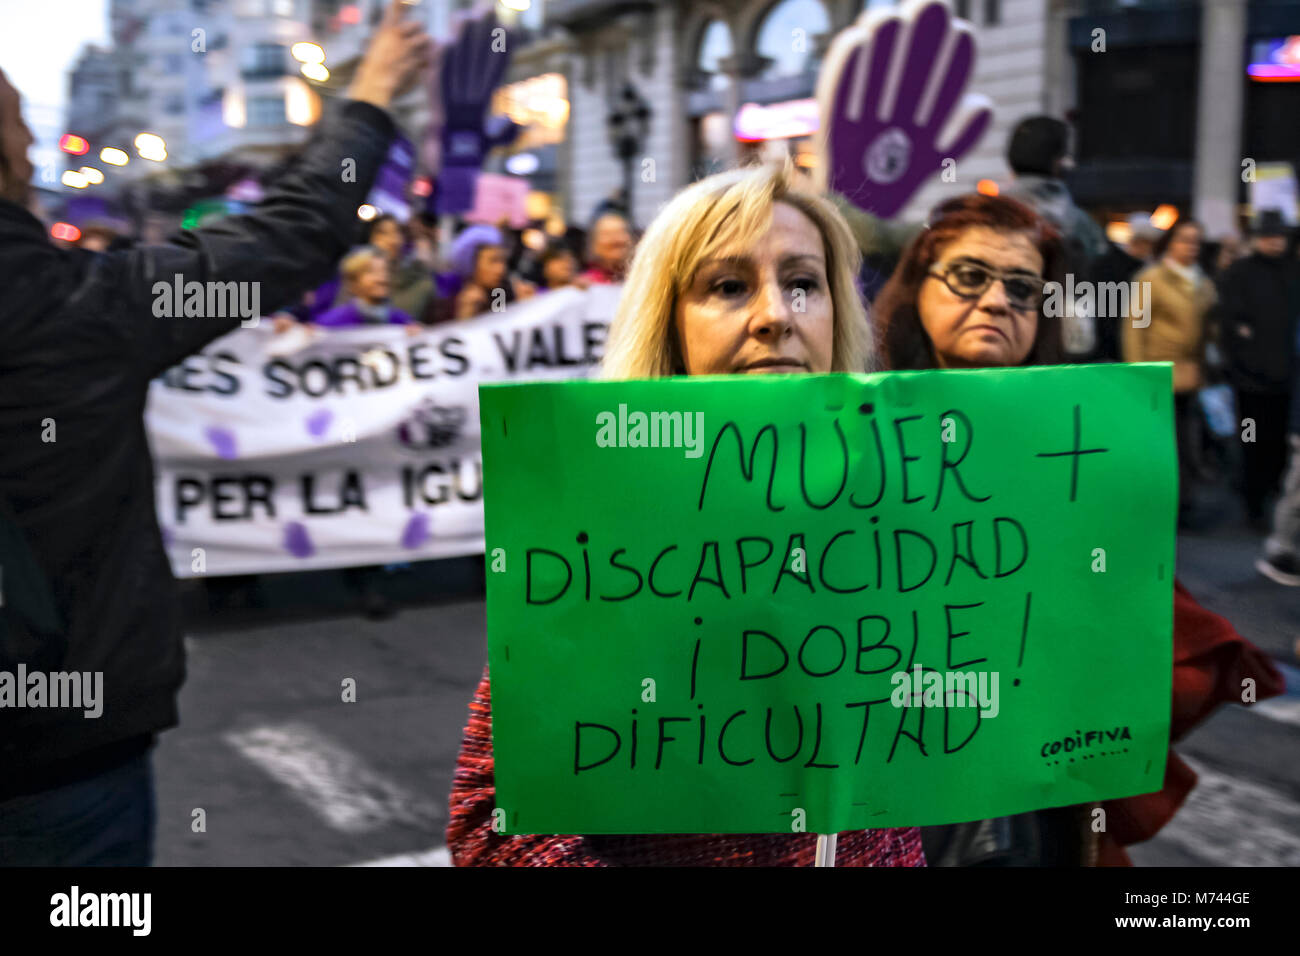 Valencia, Spanien. 8. März feministische Streik in Spanien Anspruch auf gleiche Bezahlung und gleiche Rechte für Frauen und Männer - Pro Feminismus Bewegung in Spanien für einen Generalstreik aufgerufen, keine Arbeit, kein Shop, keine Familie, für alle Arbeitnehmerinnen. "Wenn wir aufhören, die Welt nicht mehr" ist das Motto, Hommage an Island Frauen Streik 1975 erreicht 9 von 10 Frauen im Land zu stoppen. -- Unterzeichnen lautet: Frau + Behinderung = doppelte Schwierigkeit Credit: Santiago vidal Vallejo/Alamy leben Nachrichten Stockfoto